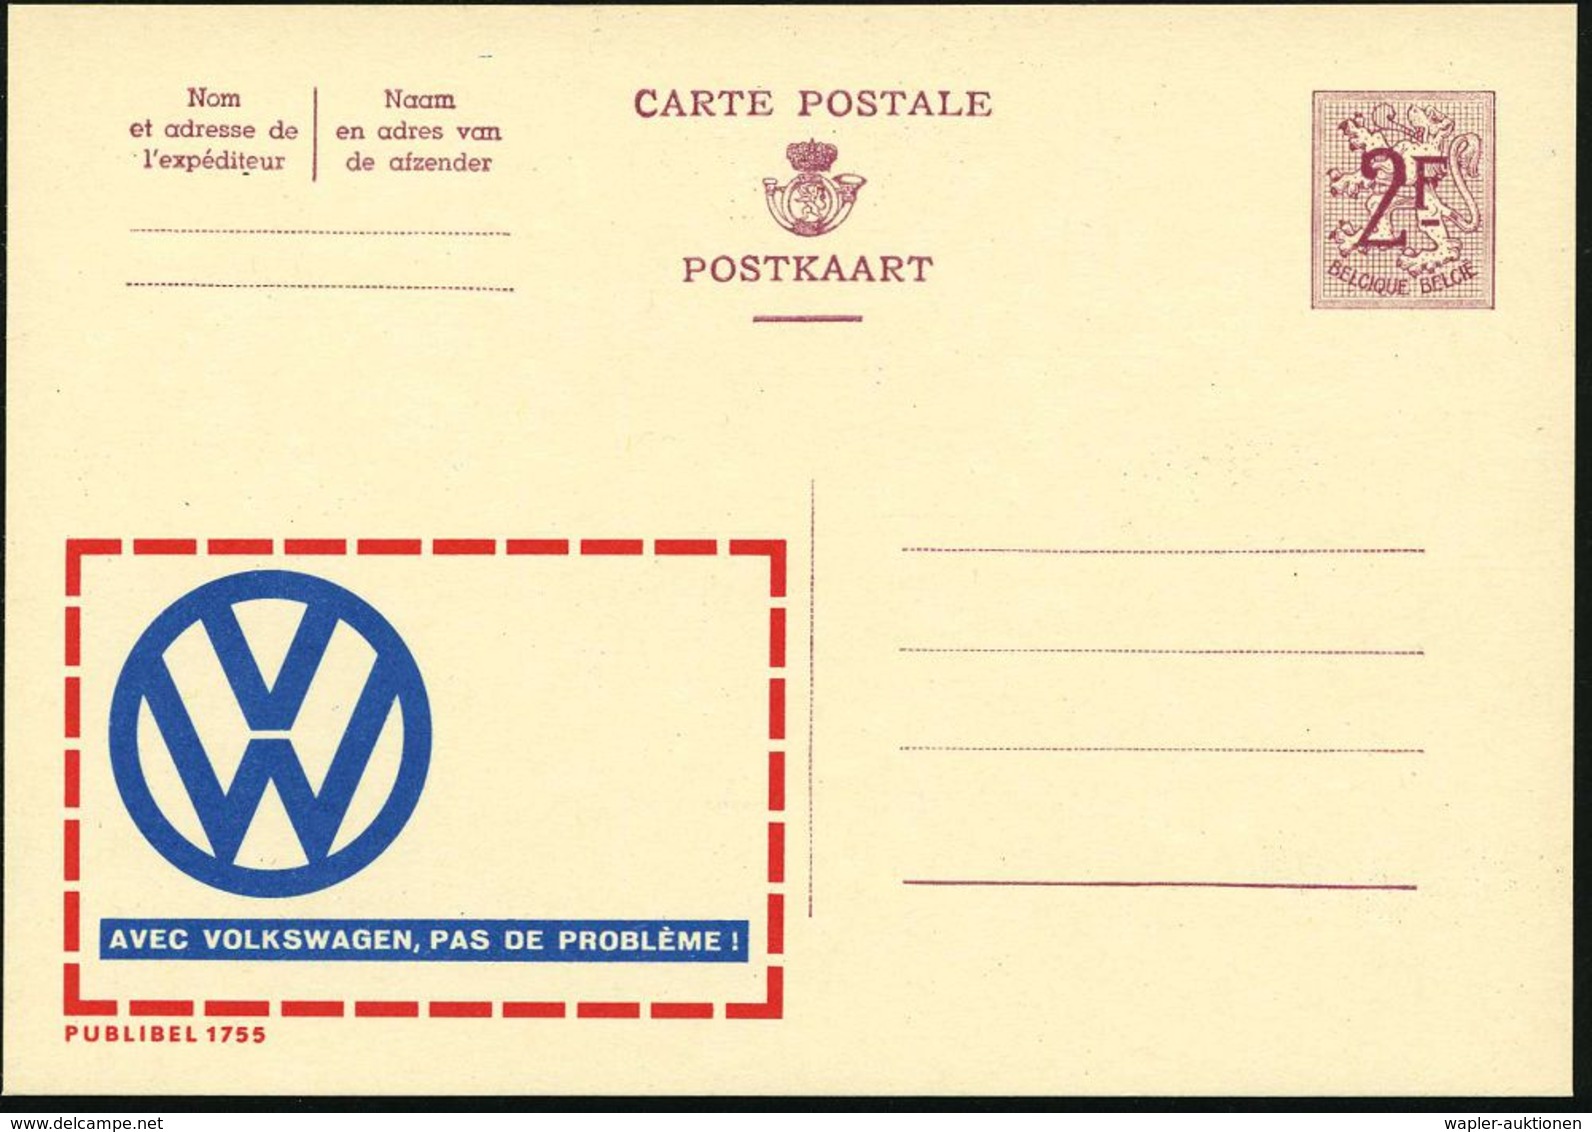 BELGIEN 1959 2 F. Reklame-P., Weinrot: VW, AVEC VOLKSWAGEN, PAS DE PROBLEME! = VW-Logo , Französ. Text, Ungebr. (Mi.P 31 - Automobili